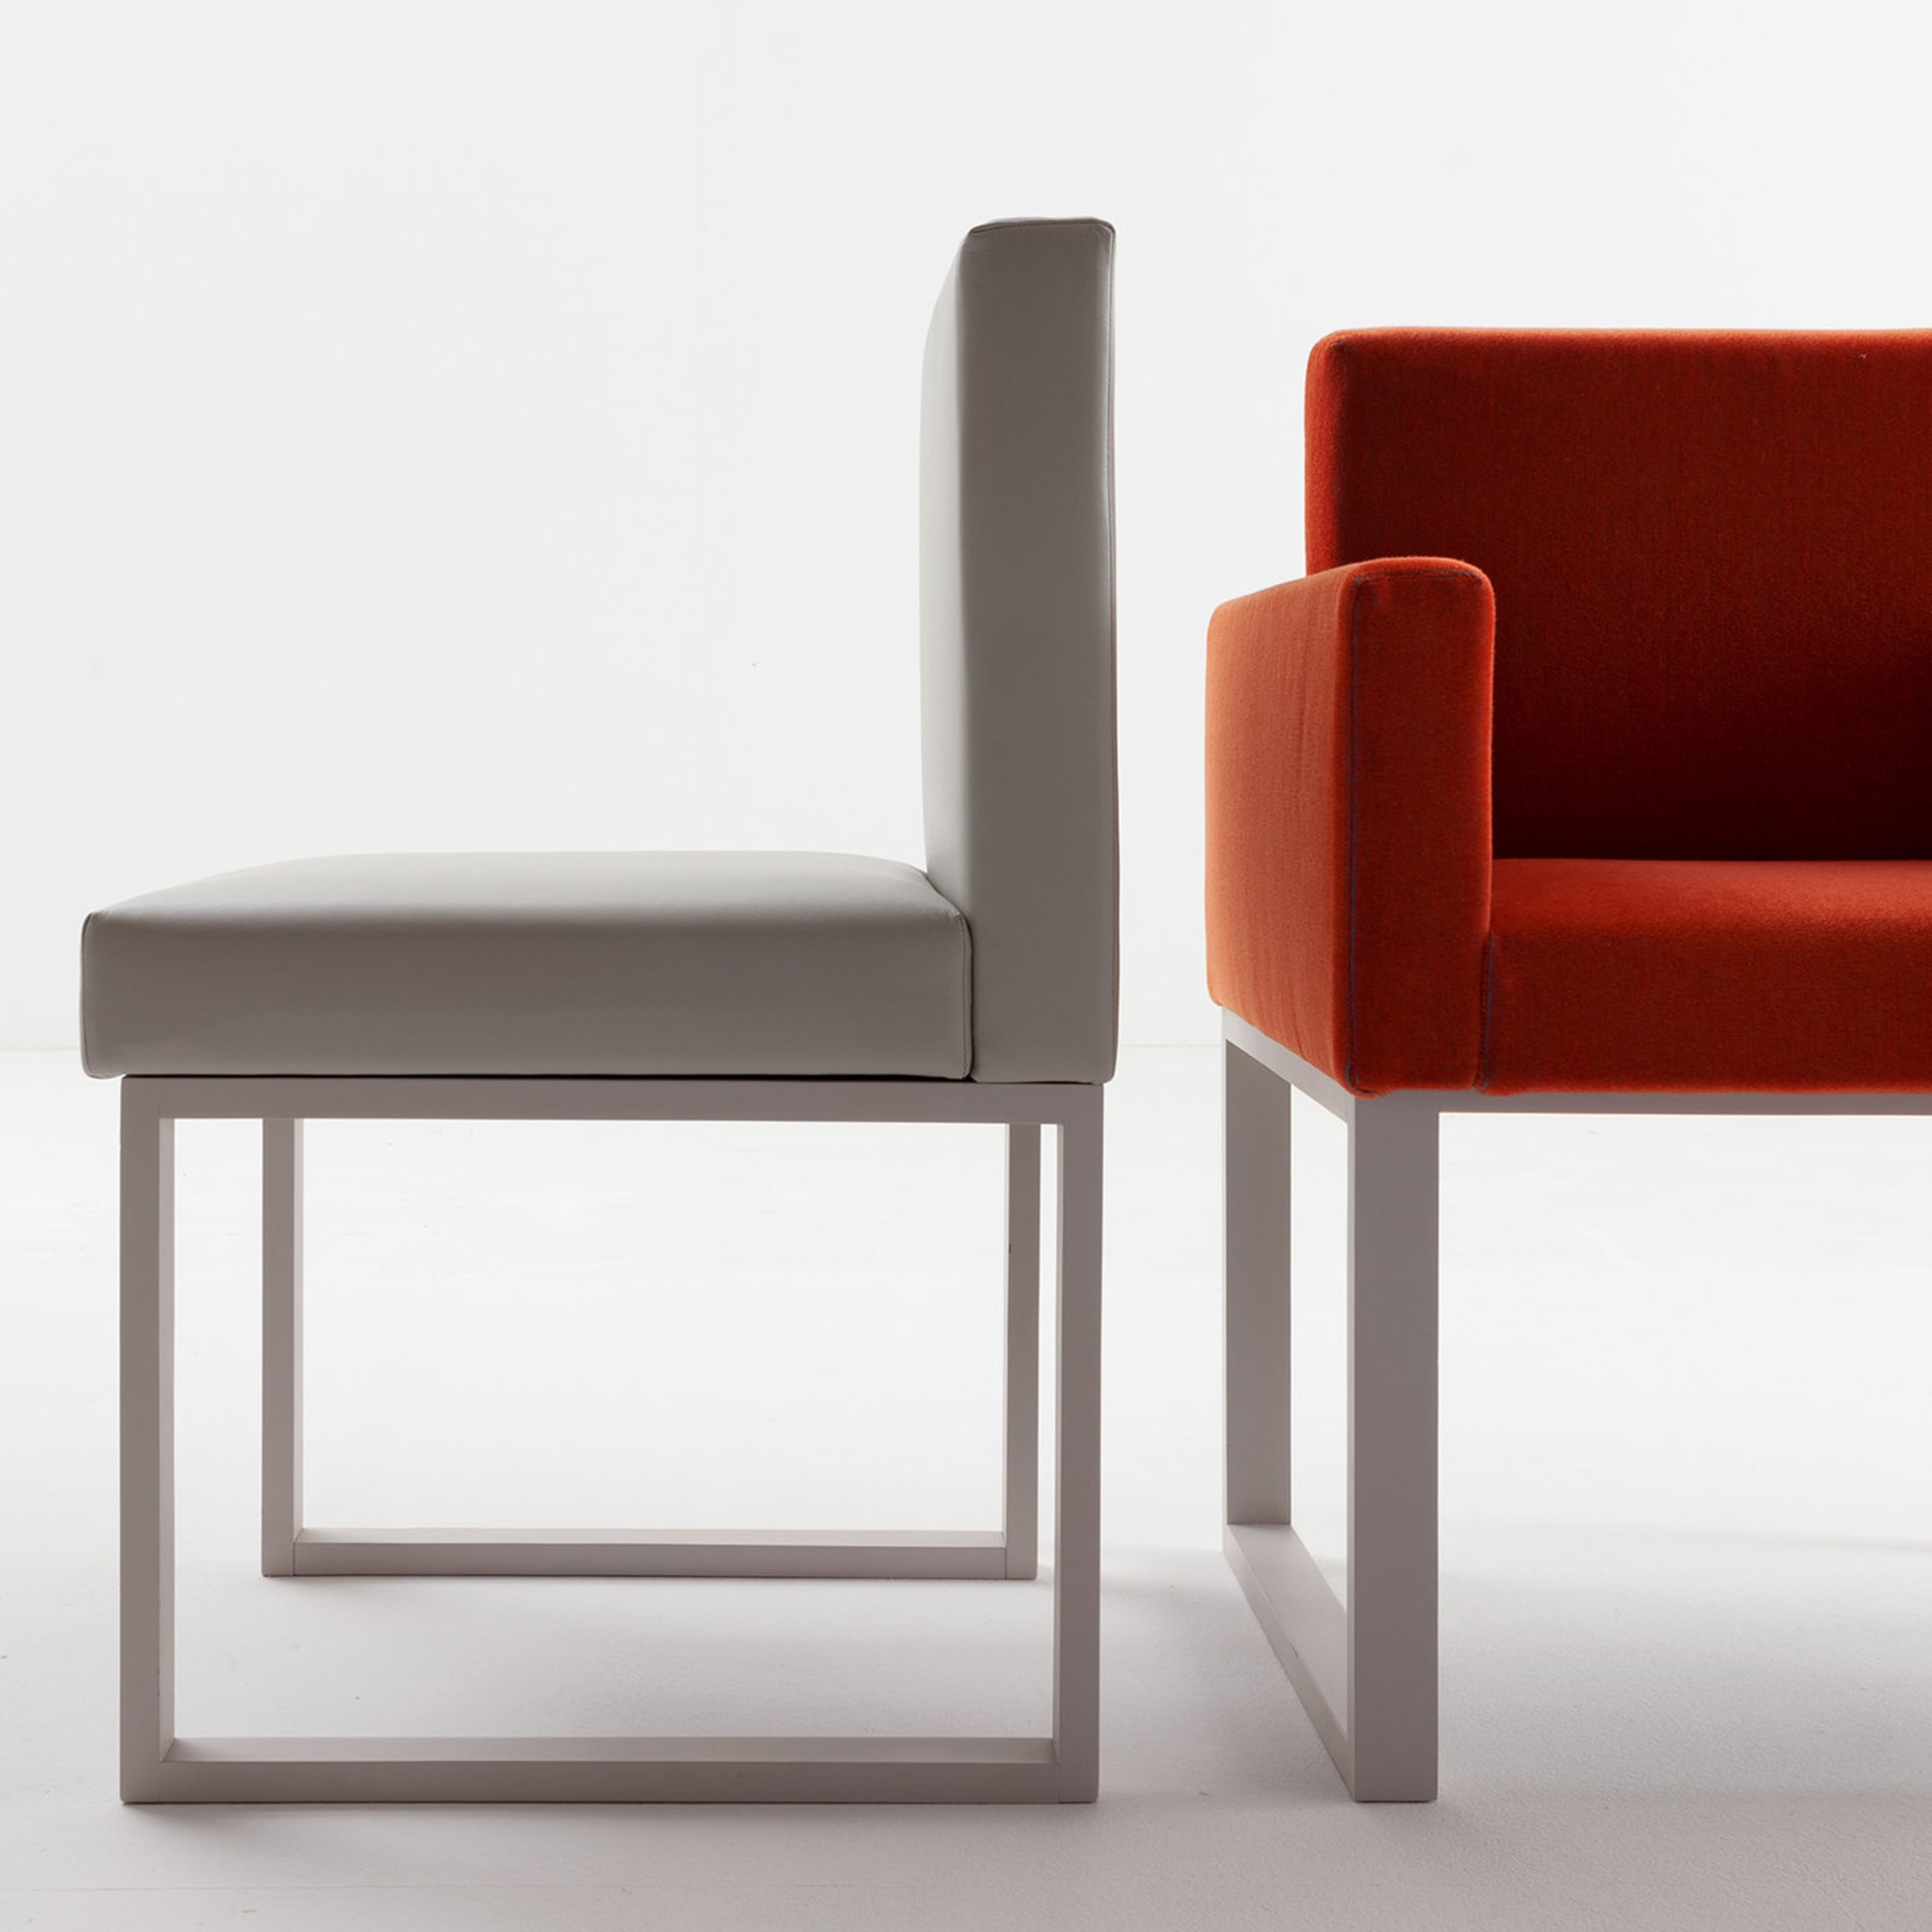 Maxima Chair by Bartoli Design - Alternative view 2